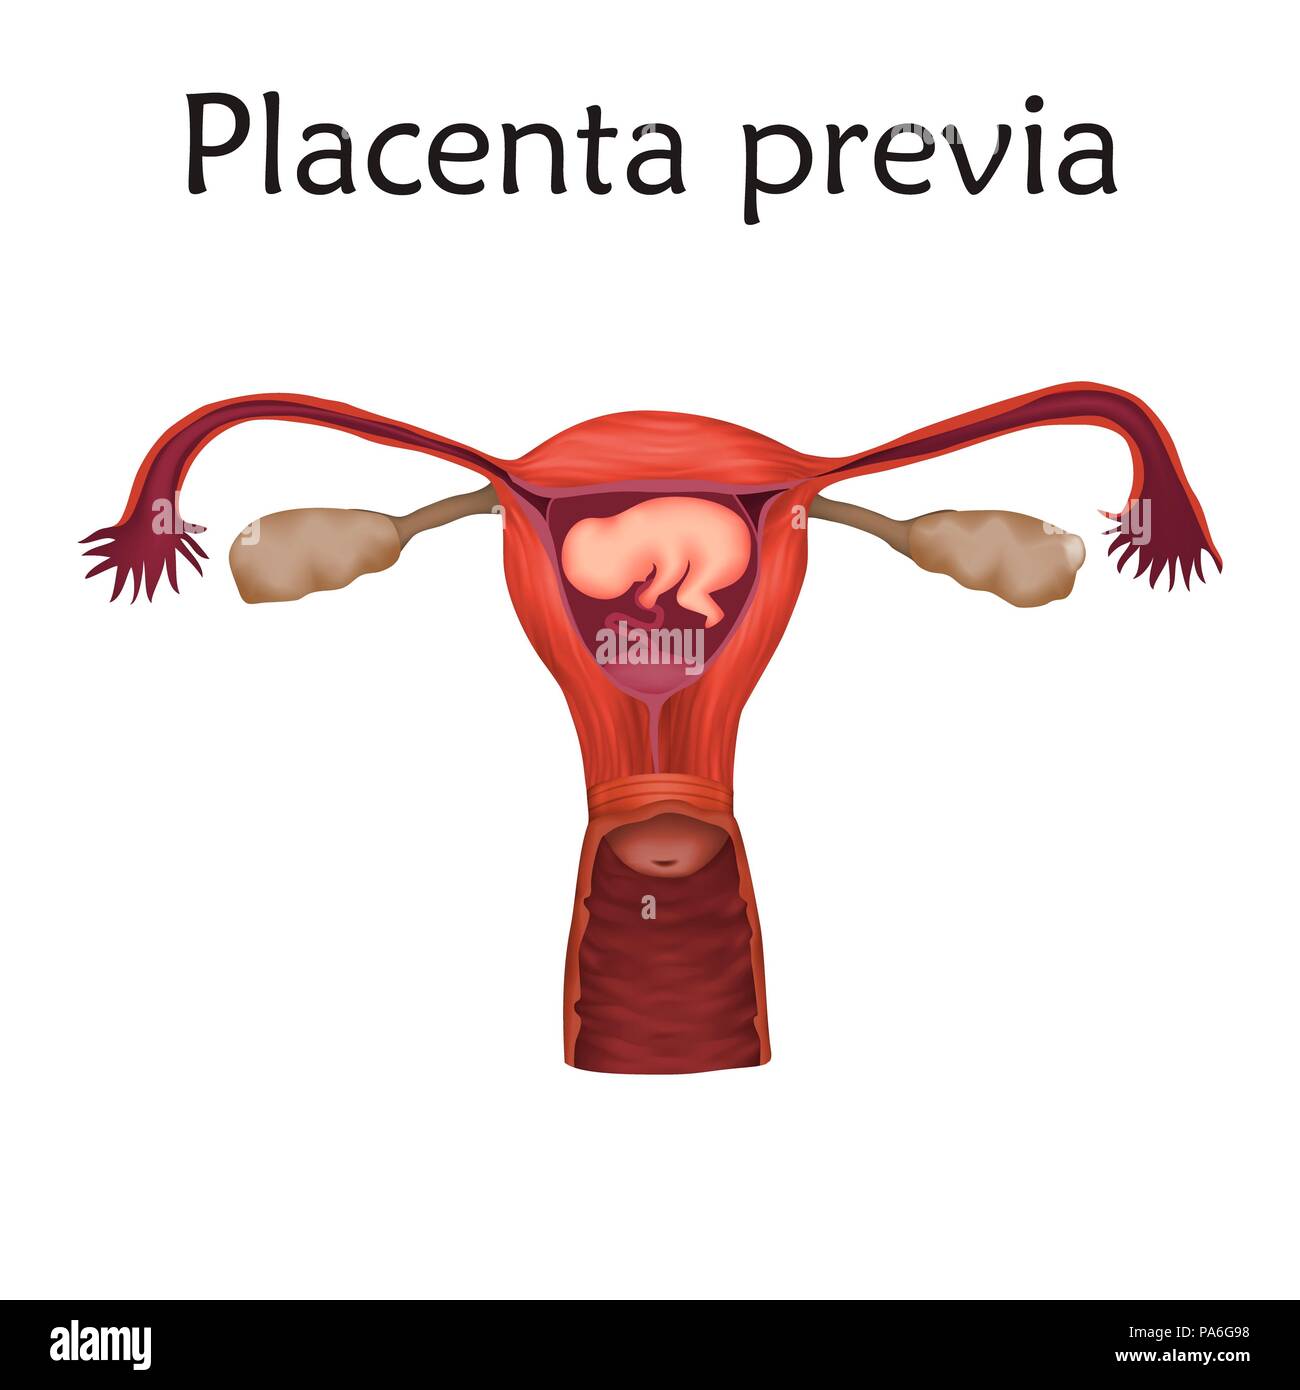 Le previa de placenta, de l'illustration. C'est une condition où le placenta partiellement ou entièrement recouvre le col de l'utérus. Banque D'Images